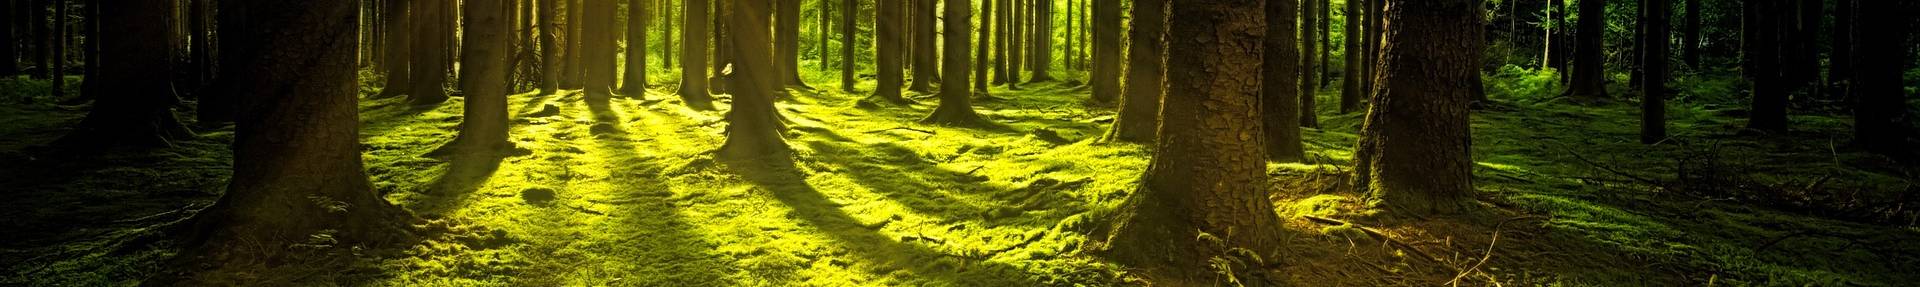 Blick in den Wald, Moosboden und Sonnenschein, der durch die Bäume strahlt